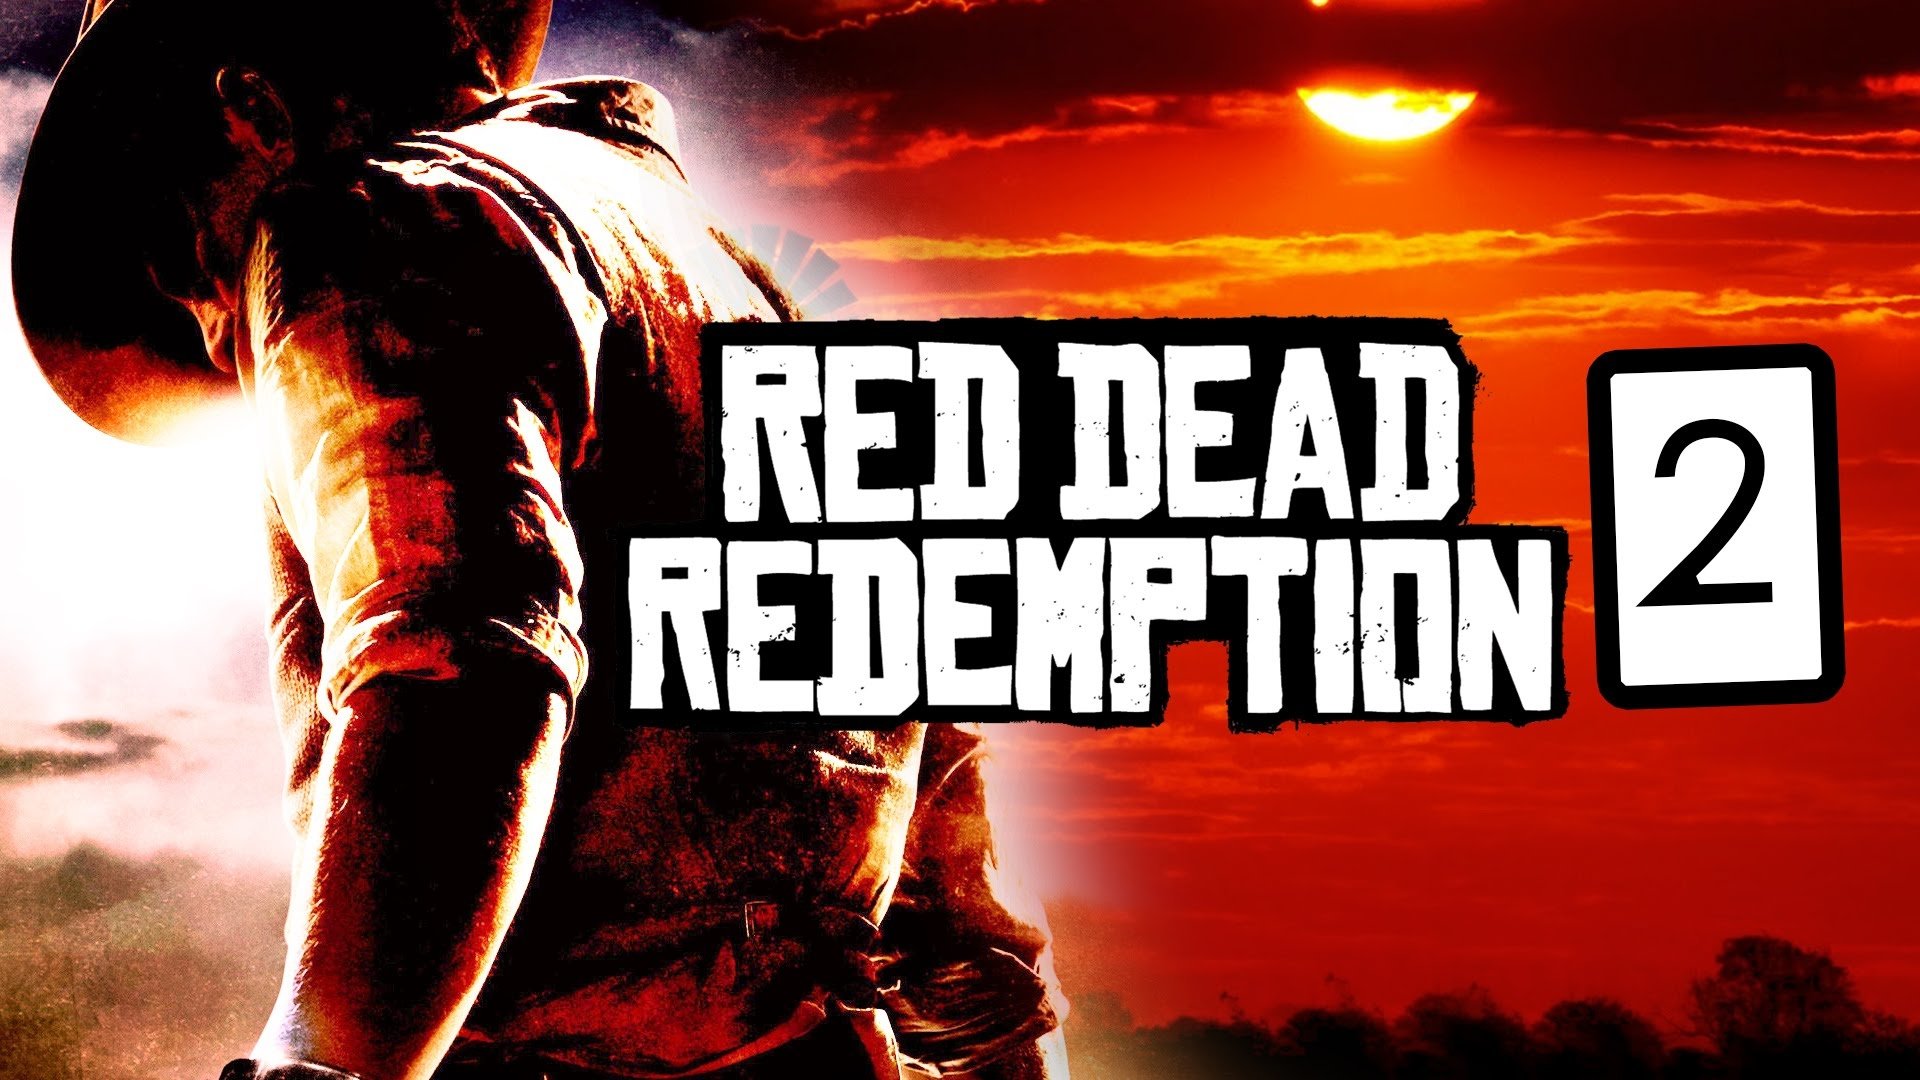 Red Dead Redemption 2 Wallpaper 2k - HD Wallpaper 